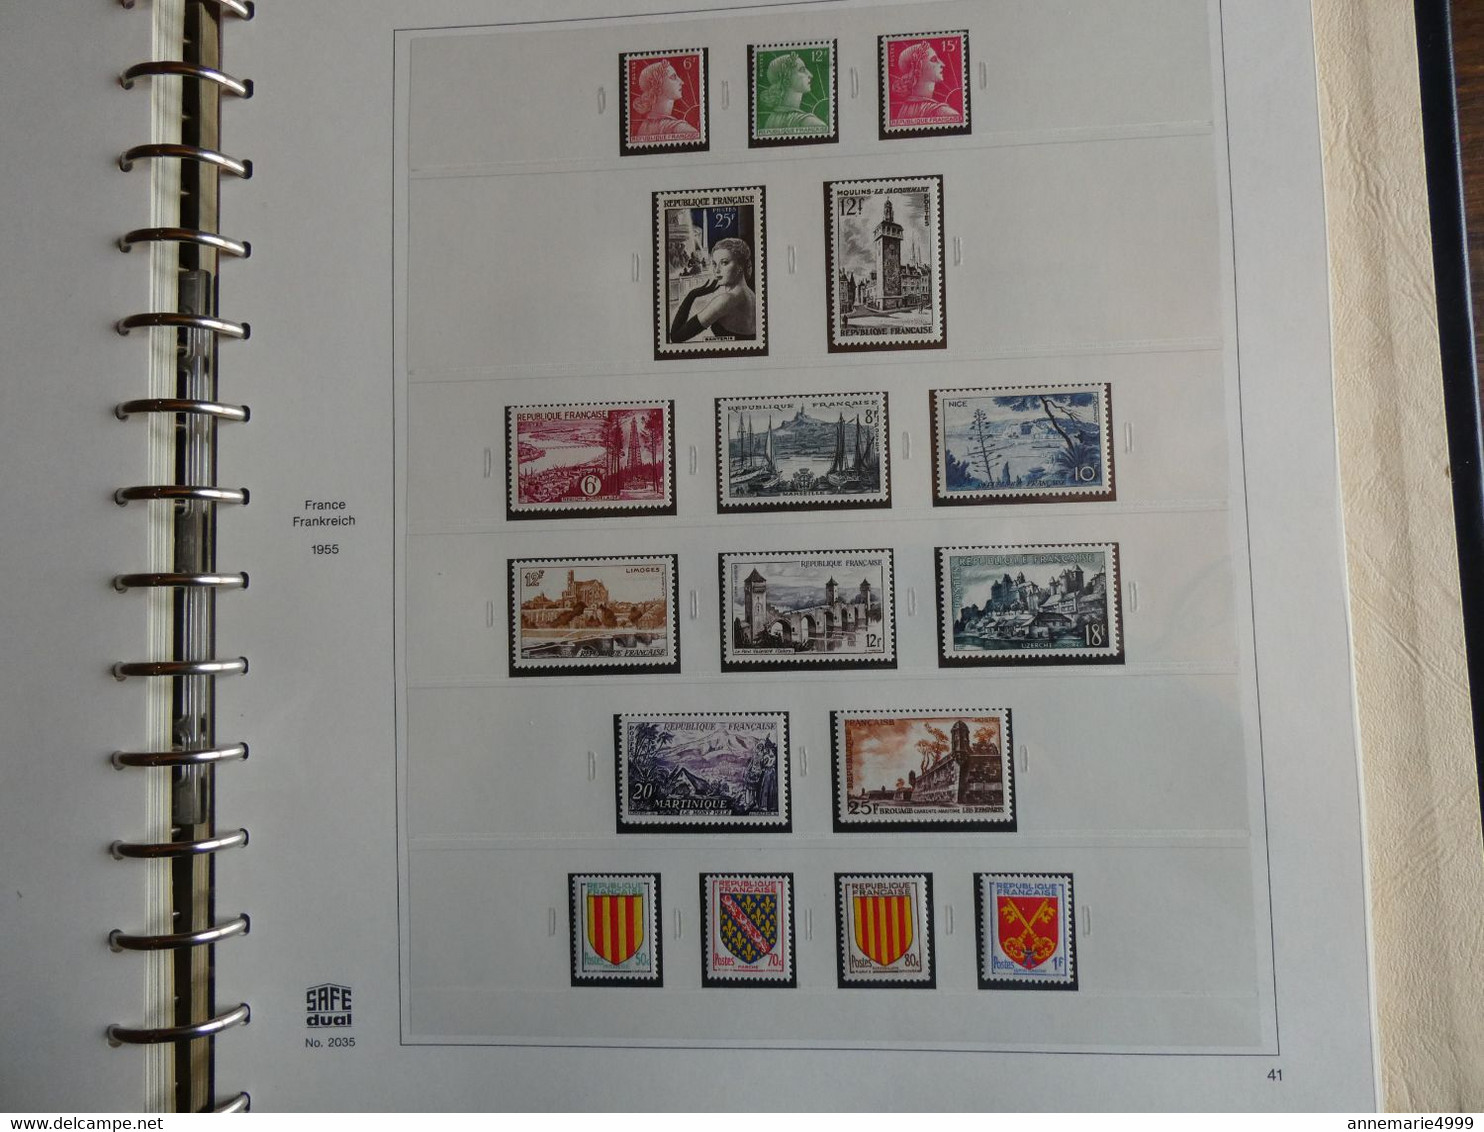 FRANCE Collection 1950 à 1959 Complète Neufs sans charnière Cote plus de 1400 €